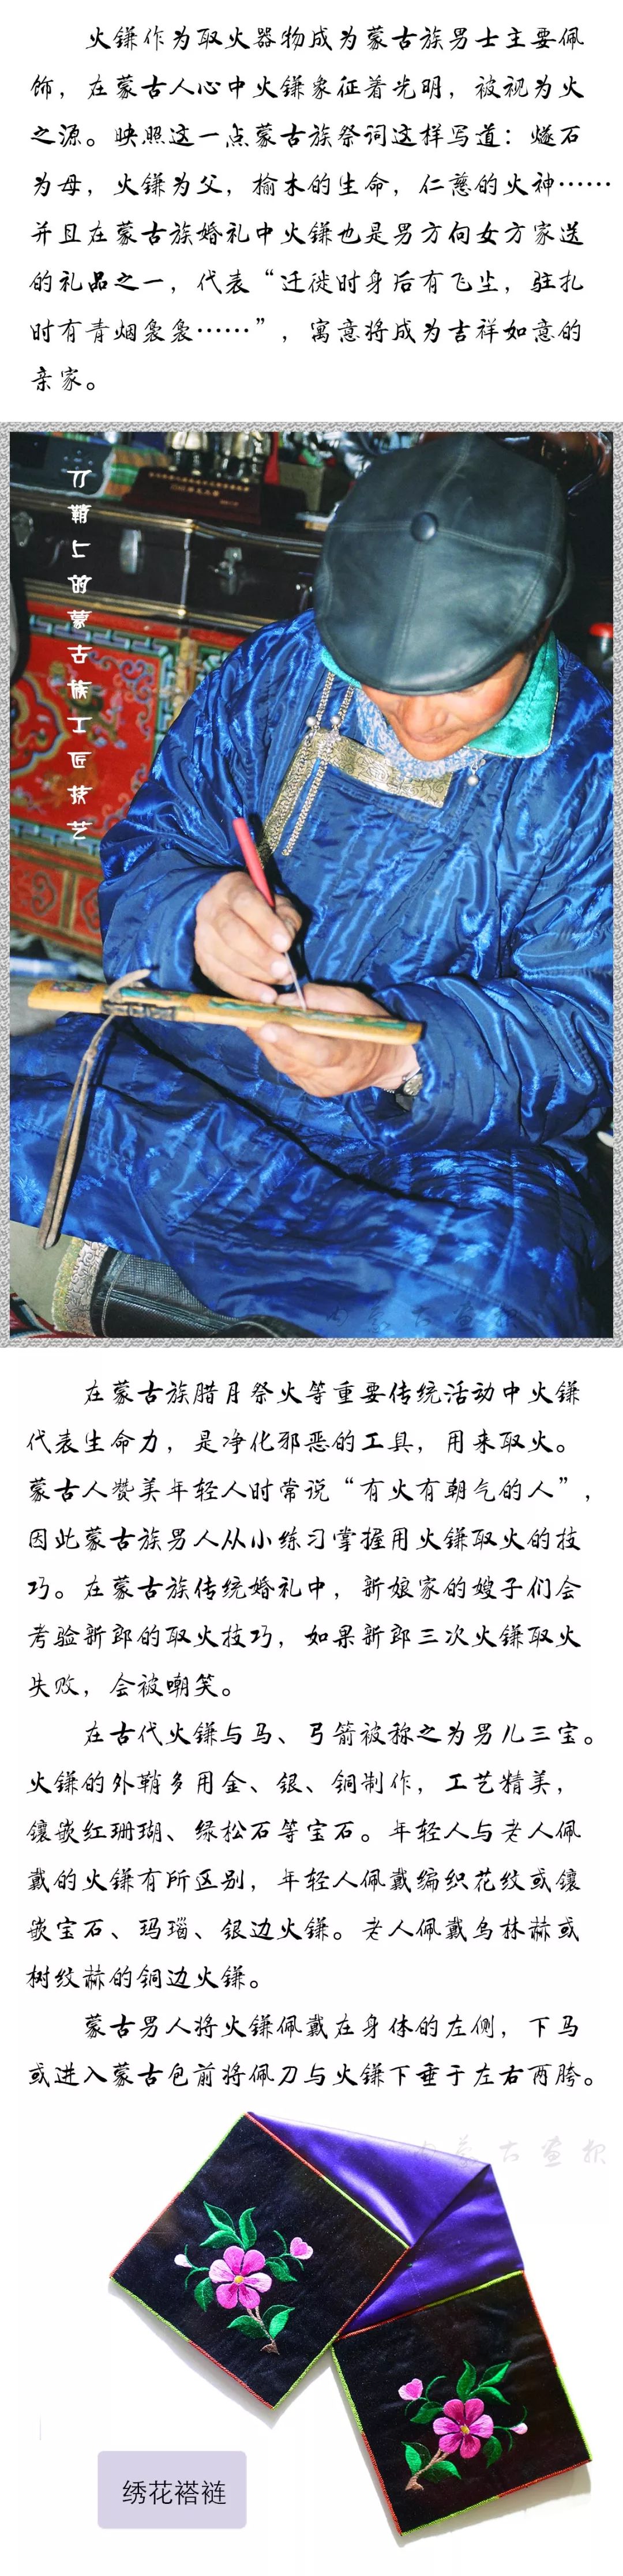 装点世界的蒙古族传统佩饰 | 男士篇 第10张